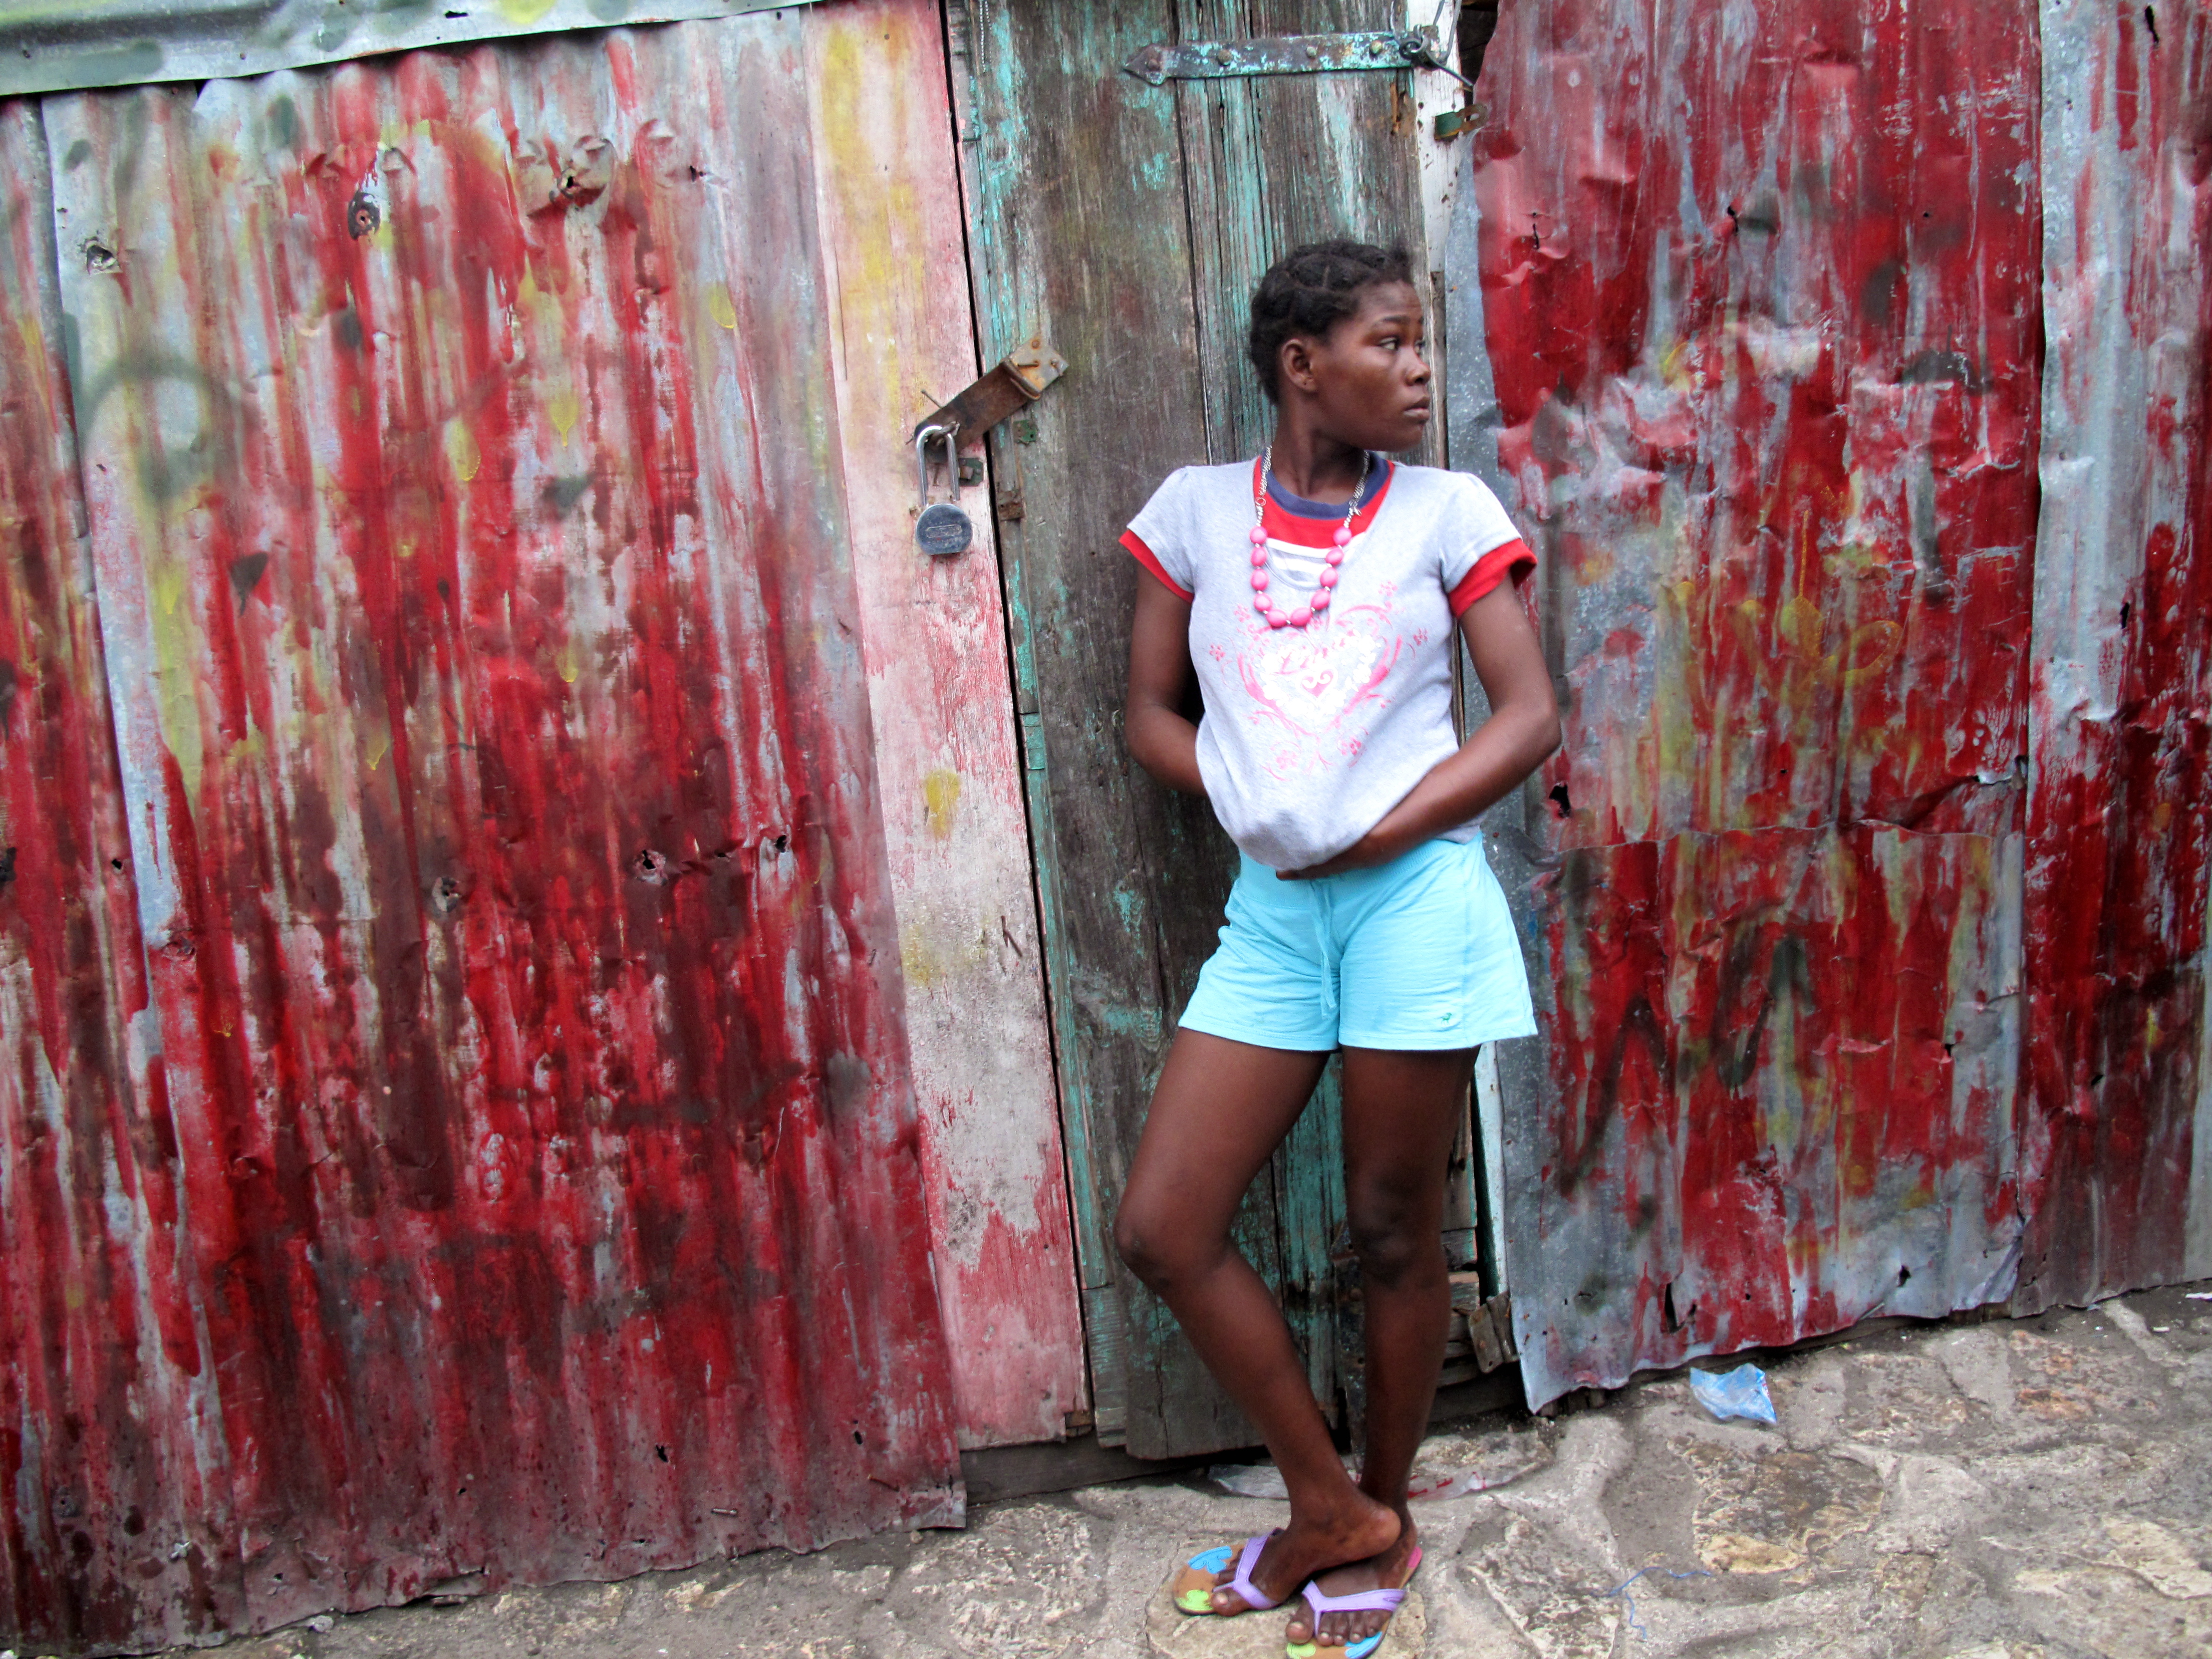  Buy Hookers in Port-au-Prince,Haiti